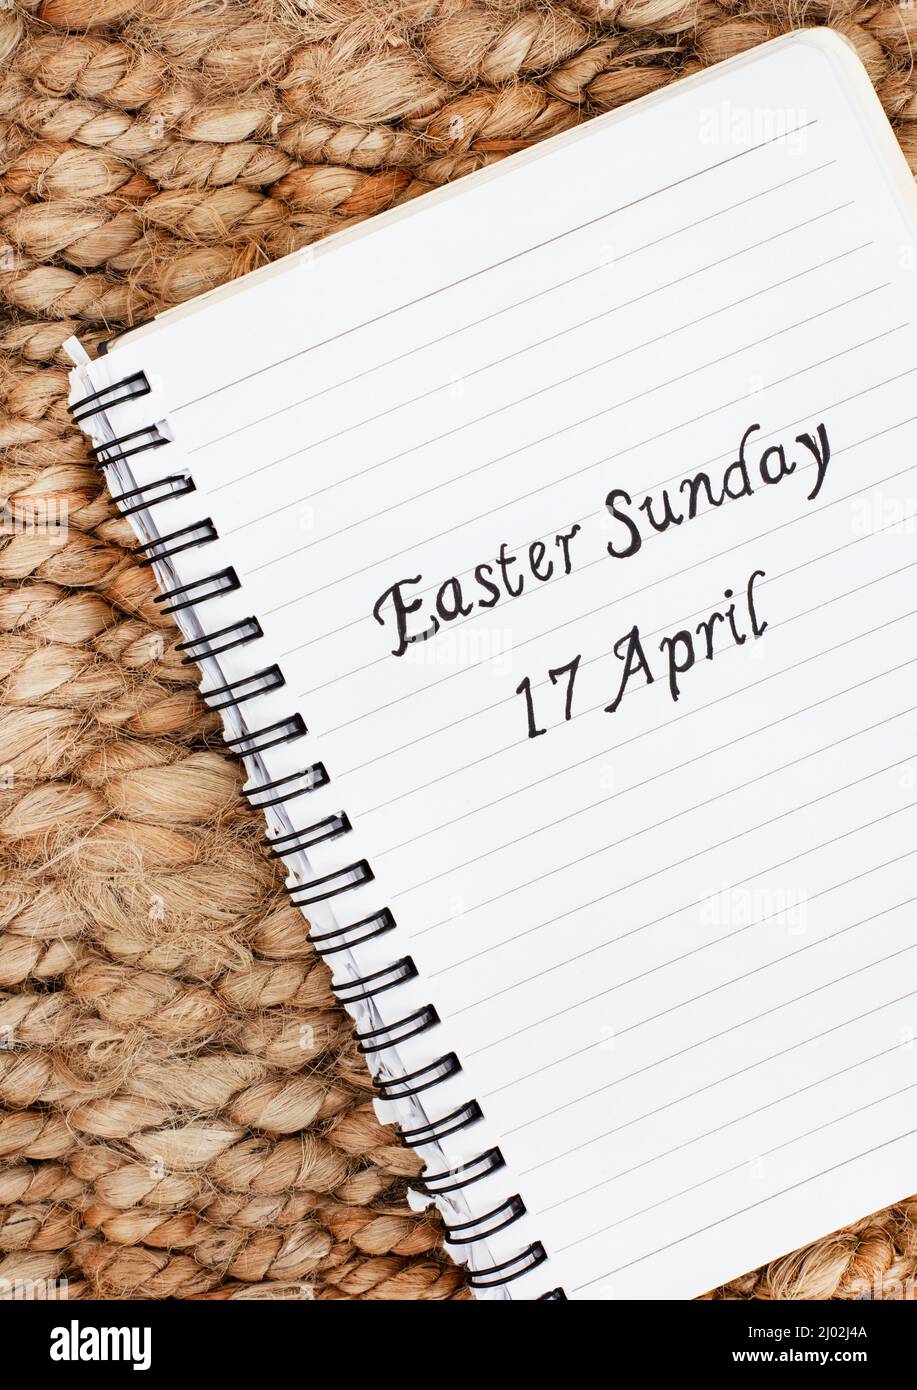 Pasqua Domenica 17 Aprile scritto a mano su un quaderno con sfondo rustico Foto Stock